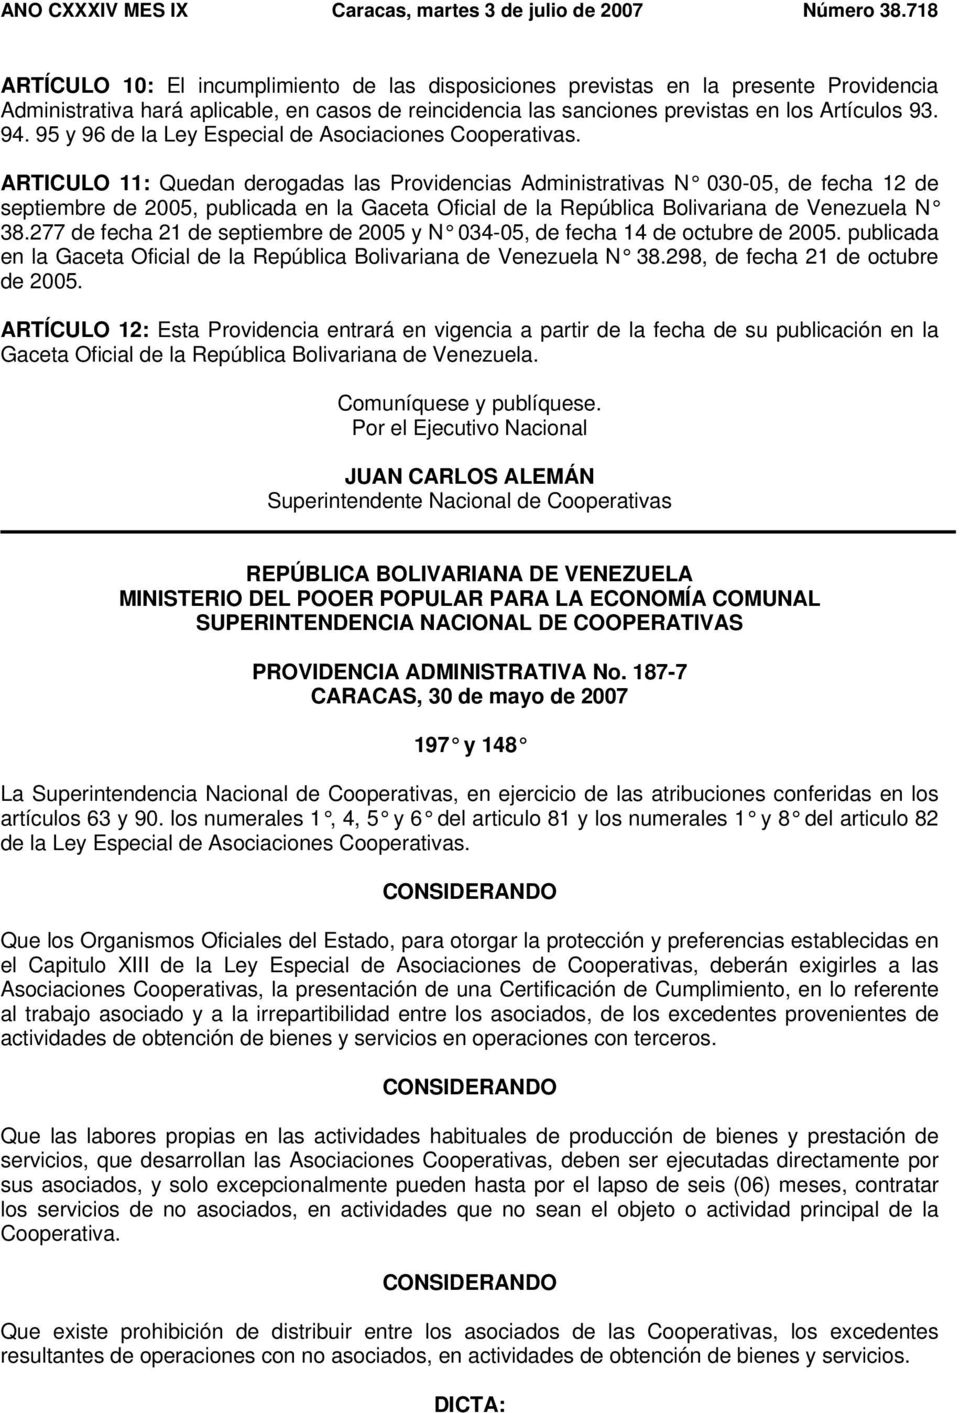 ARTICULO 11: Quedan derogadas las Providencias Administrativas N 030-05, de fecha 12 de septiembre de 2005, publicada en la Gaceta Oficial de la República Bolivariana de Venezuela N 38.